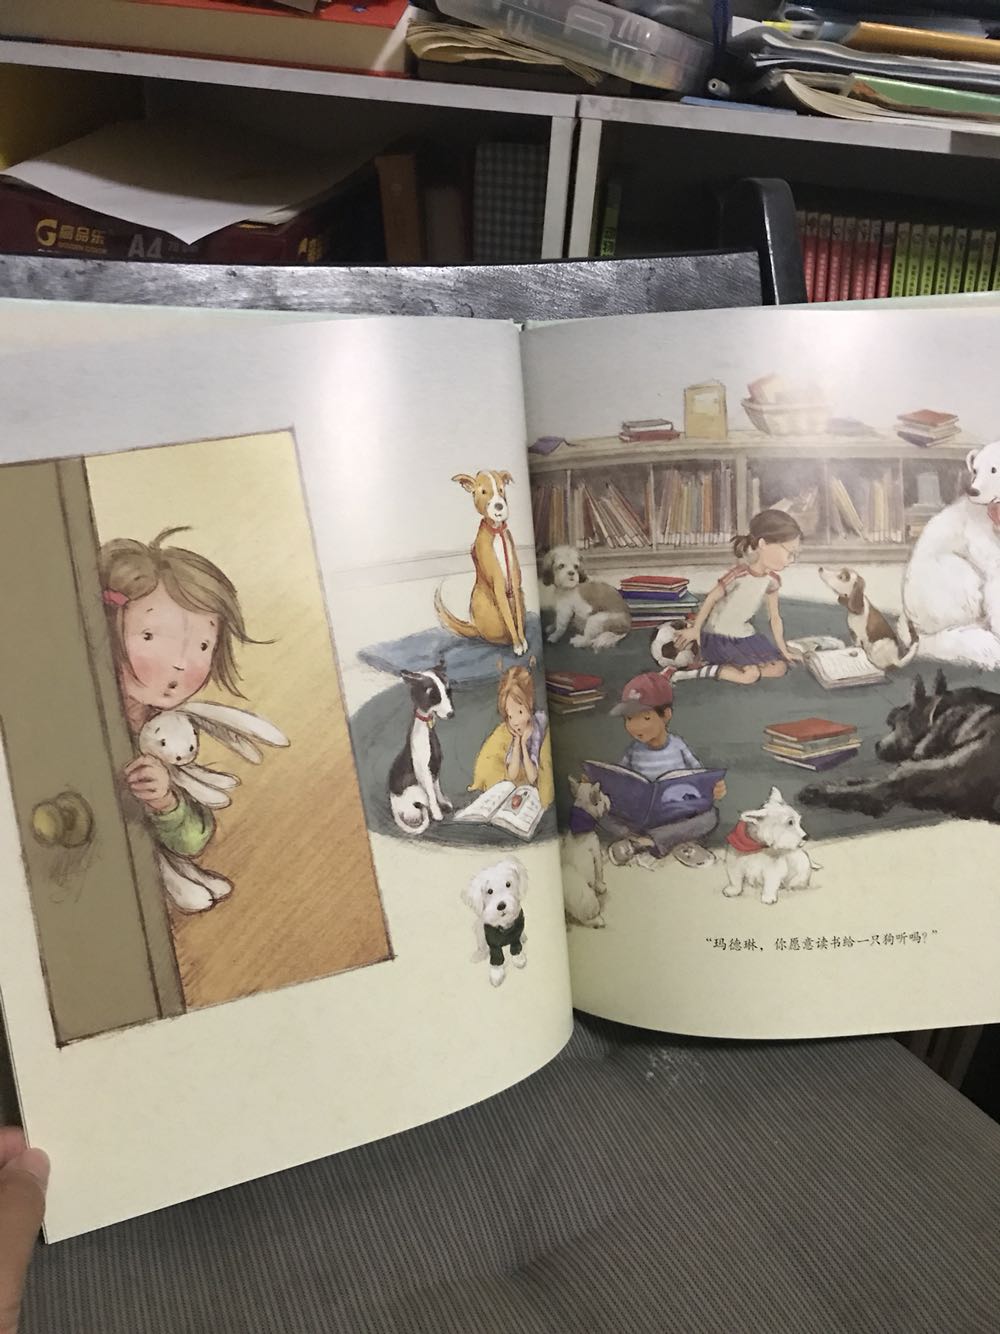 这本孩子最先要读的，动物和小孩最亲近呀，一个独特温暖的故事，孩子特别喜欢小狗，读来哈哈大笑！不错！